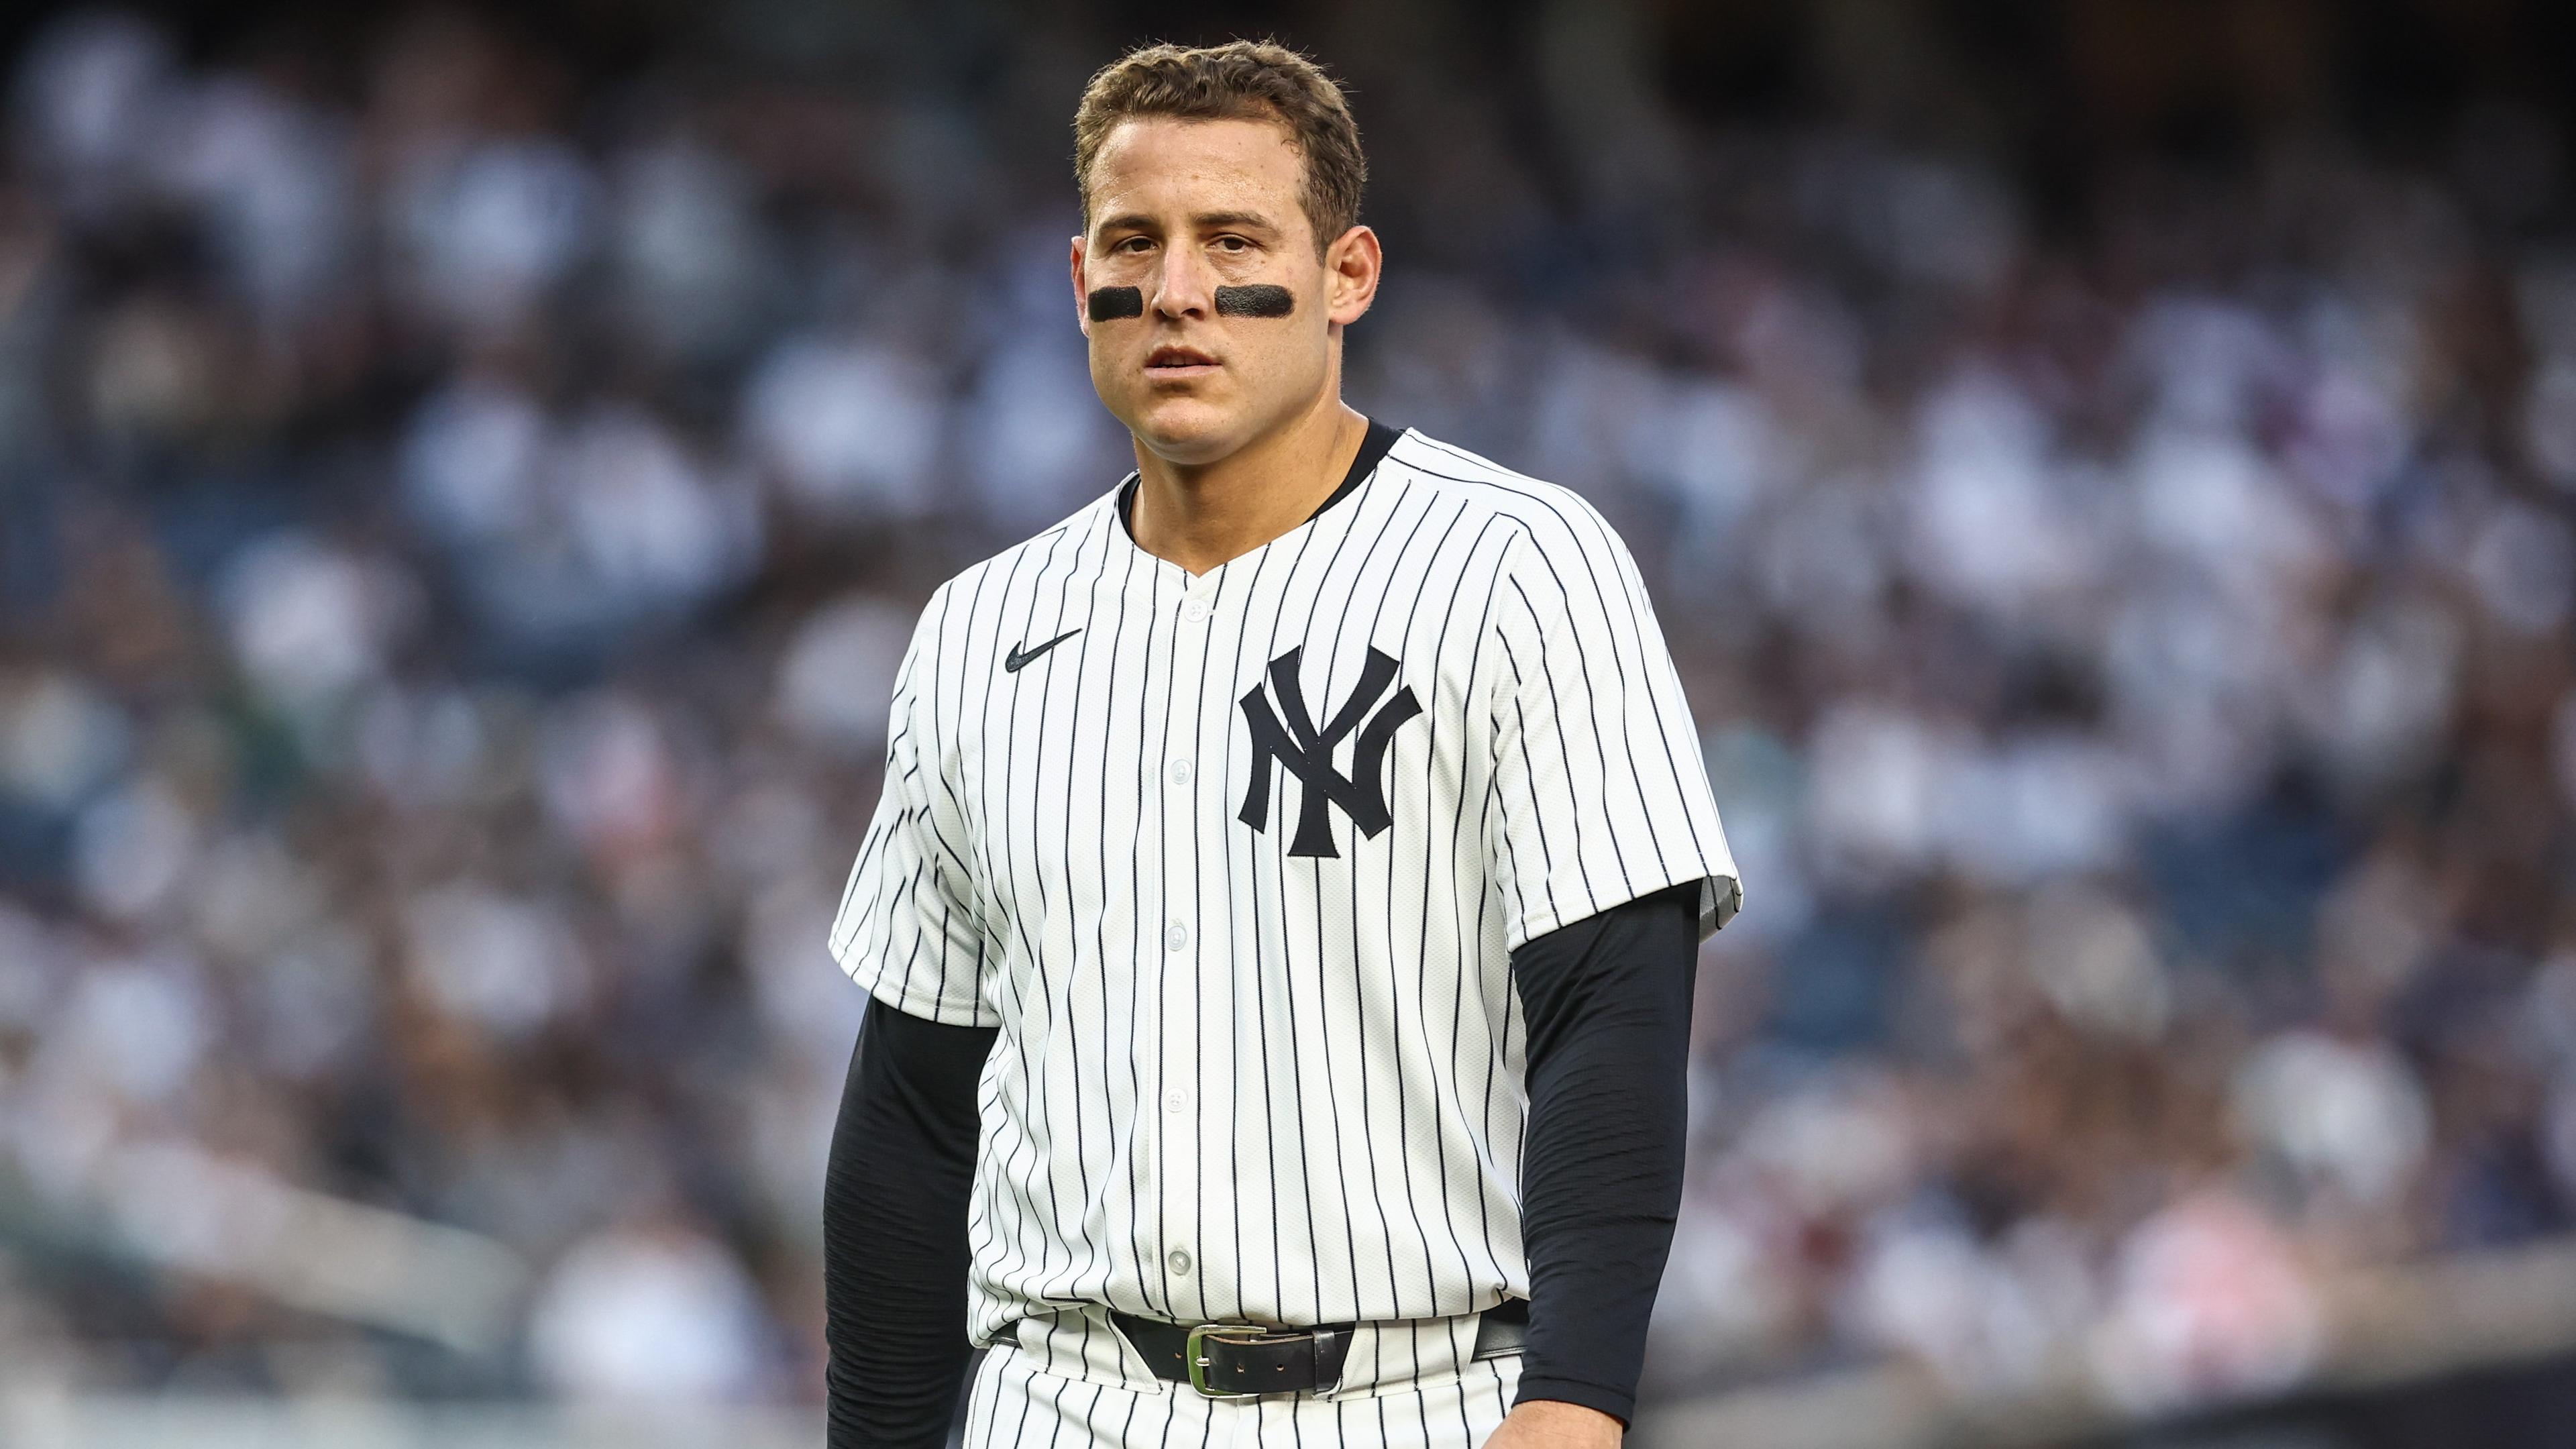 New York Yankees first baseman Anthony Rizzo (48) at Yankee Stadium / Wendell Cruz - USA TODAY Sports